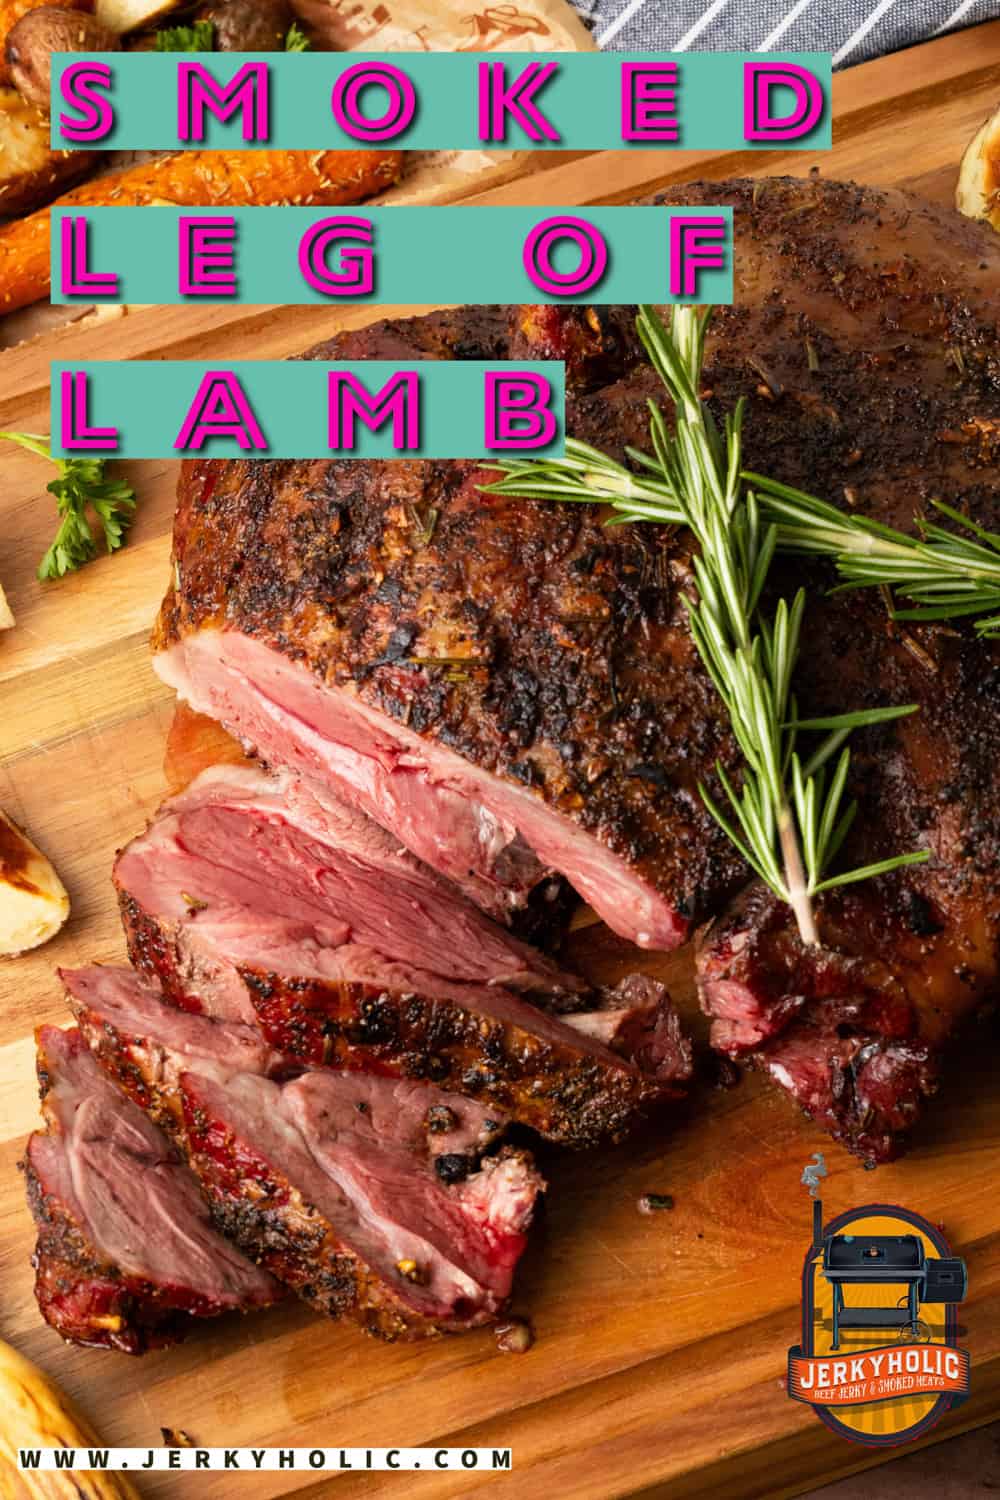 Smoked Leg of Lamb